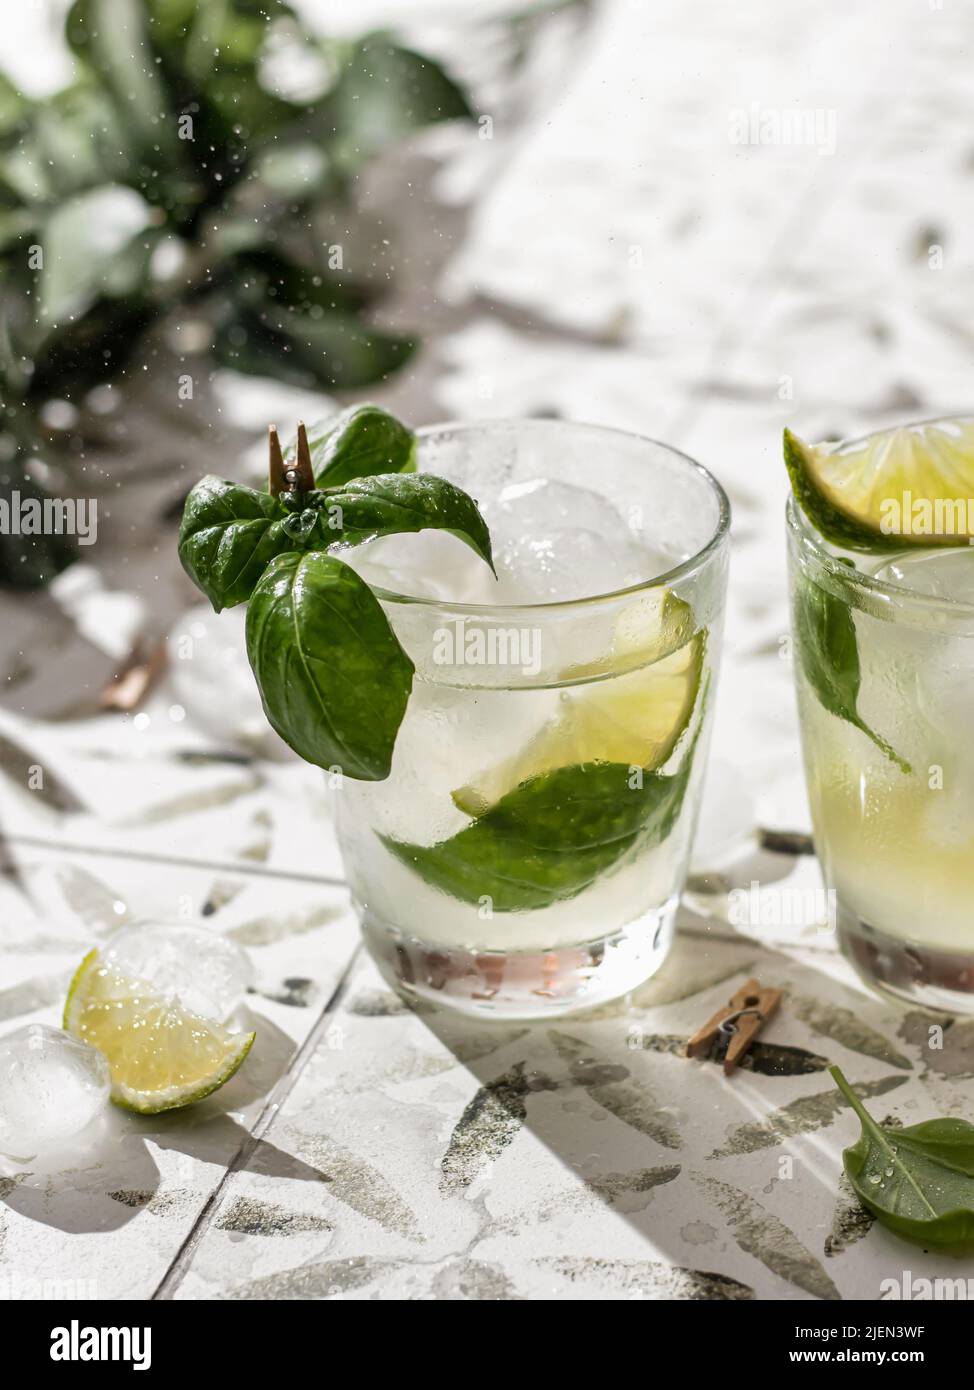 Deux cocktails d'été avec citron vert et basilic dans des verres gros plan sur carreaux blancs imprimés. Orientation verticale Banque D'Images